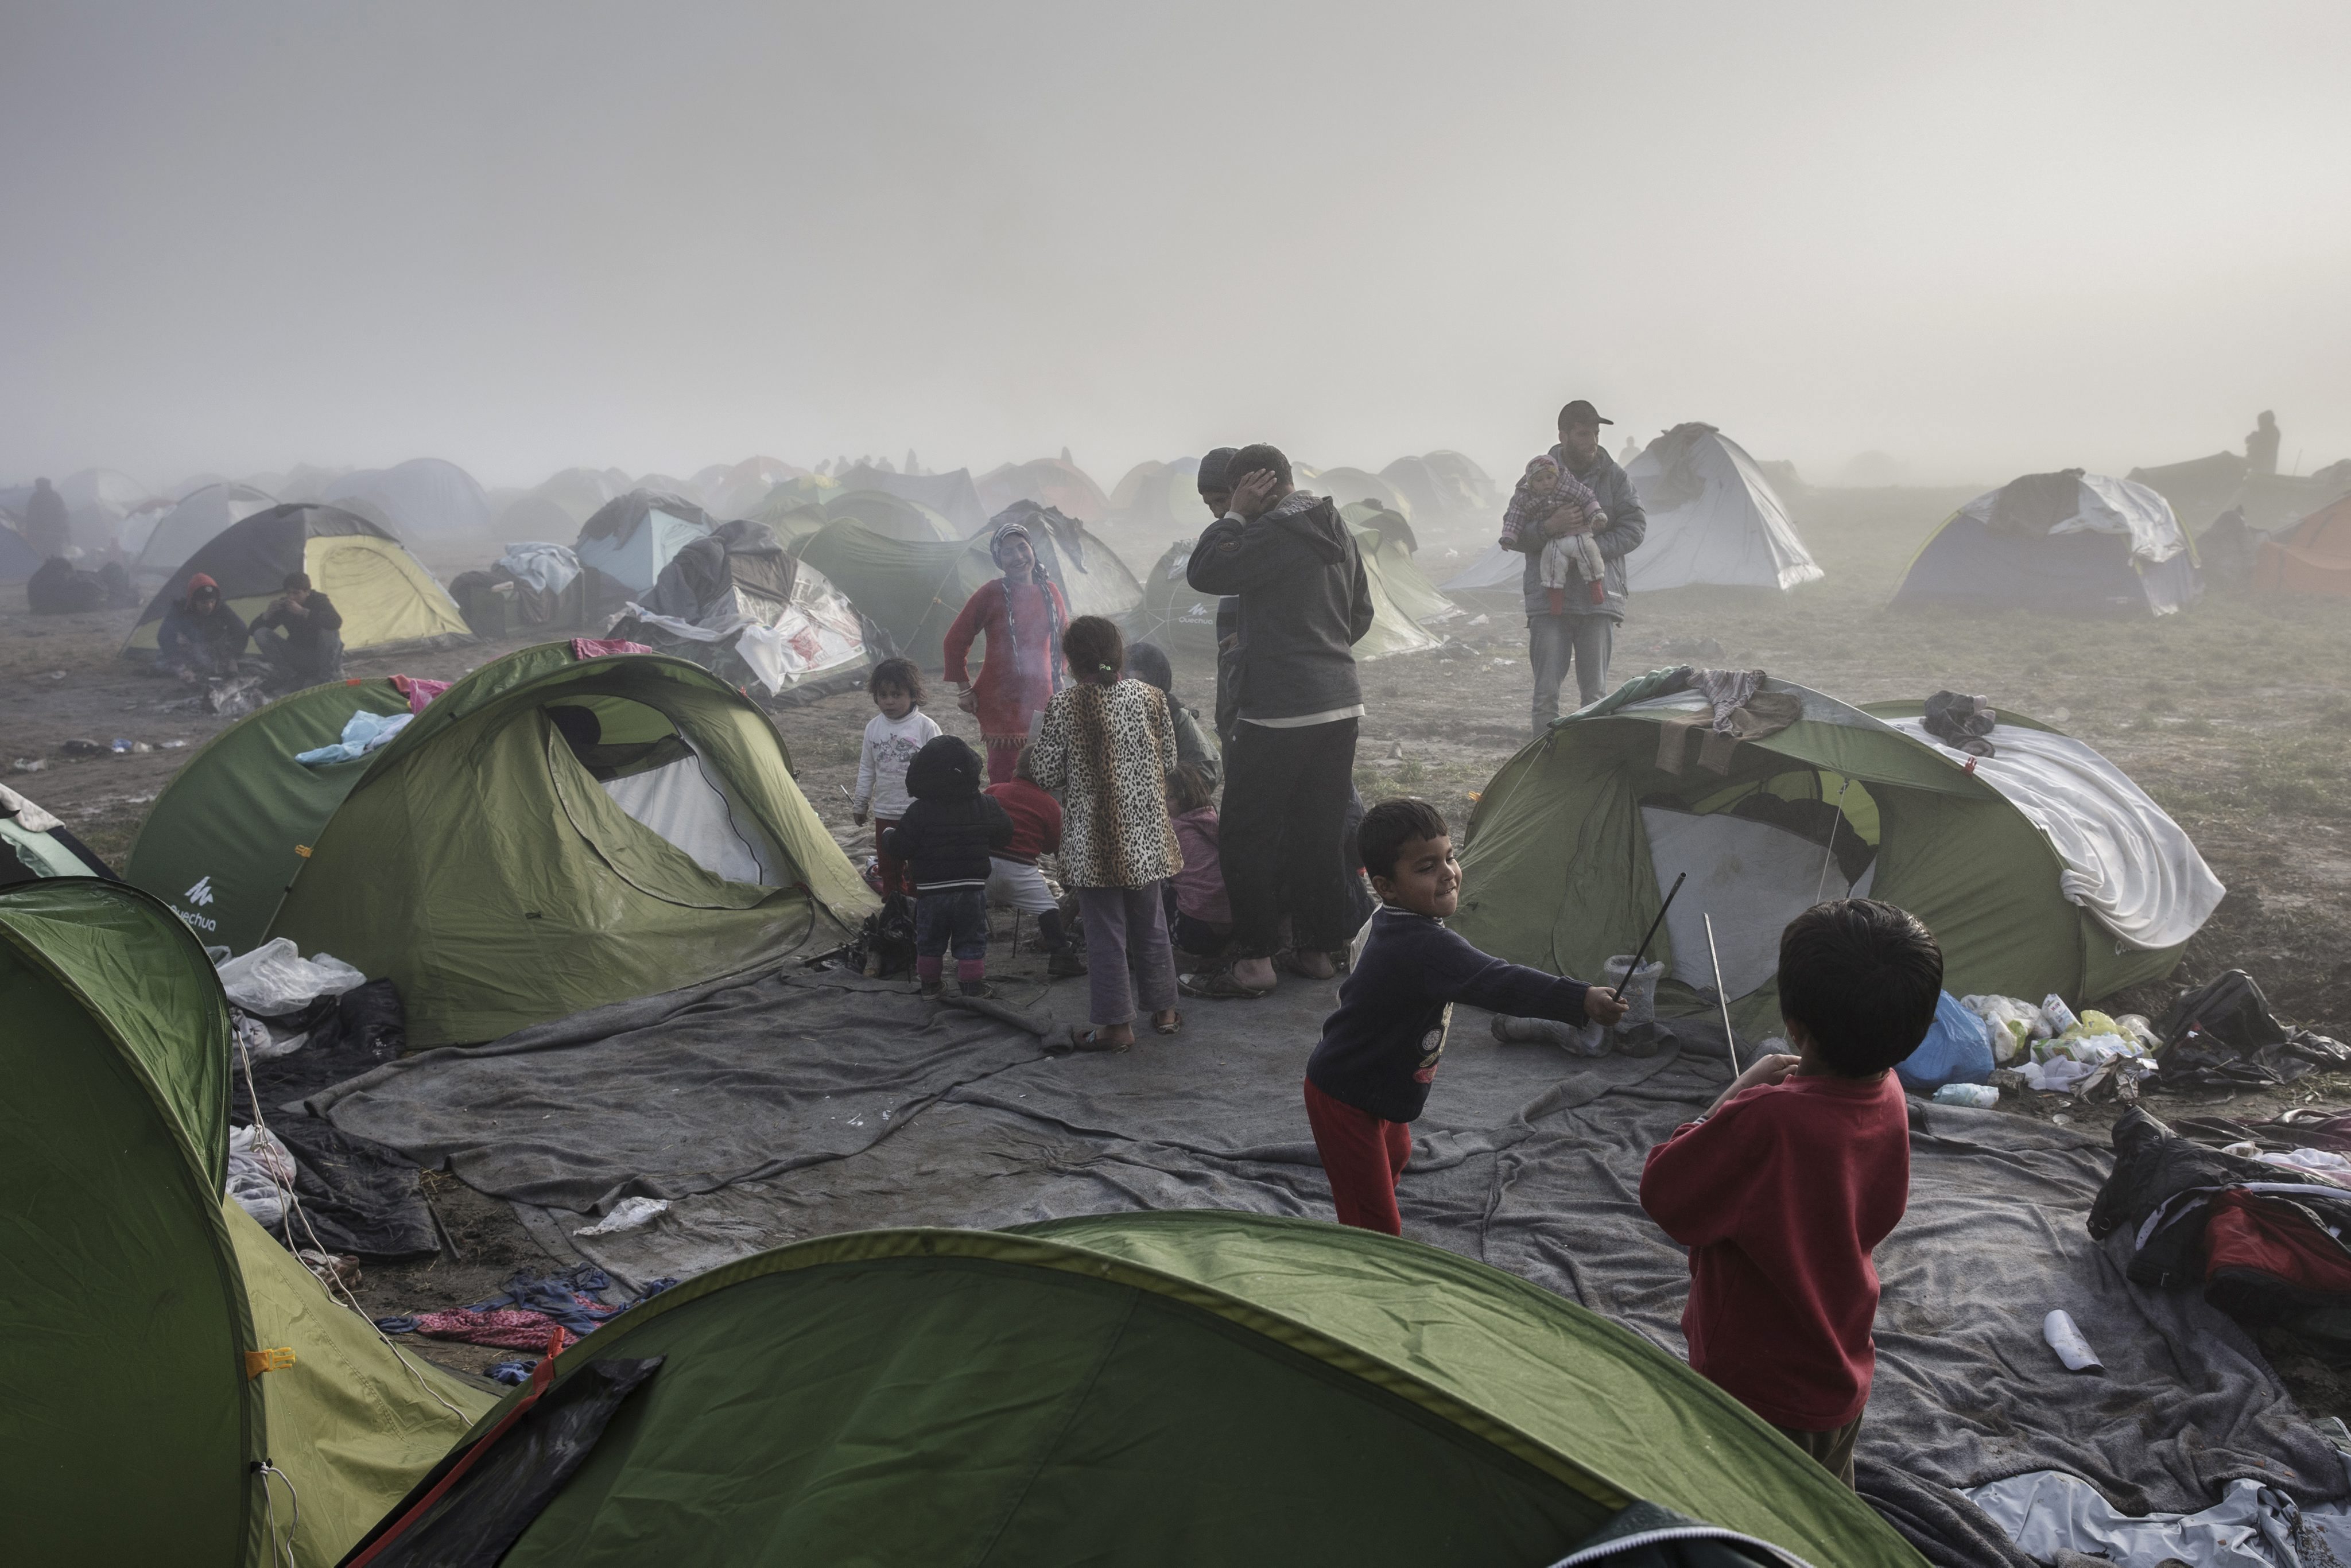 El informe se basa en los testimonios de unos 22.000 migrantes y refugiados entrevistados por la OIM, de los cuales 11.000 eran niños y jóvenes.